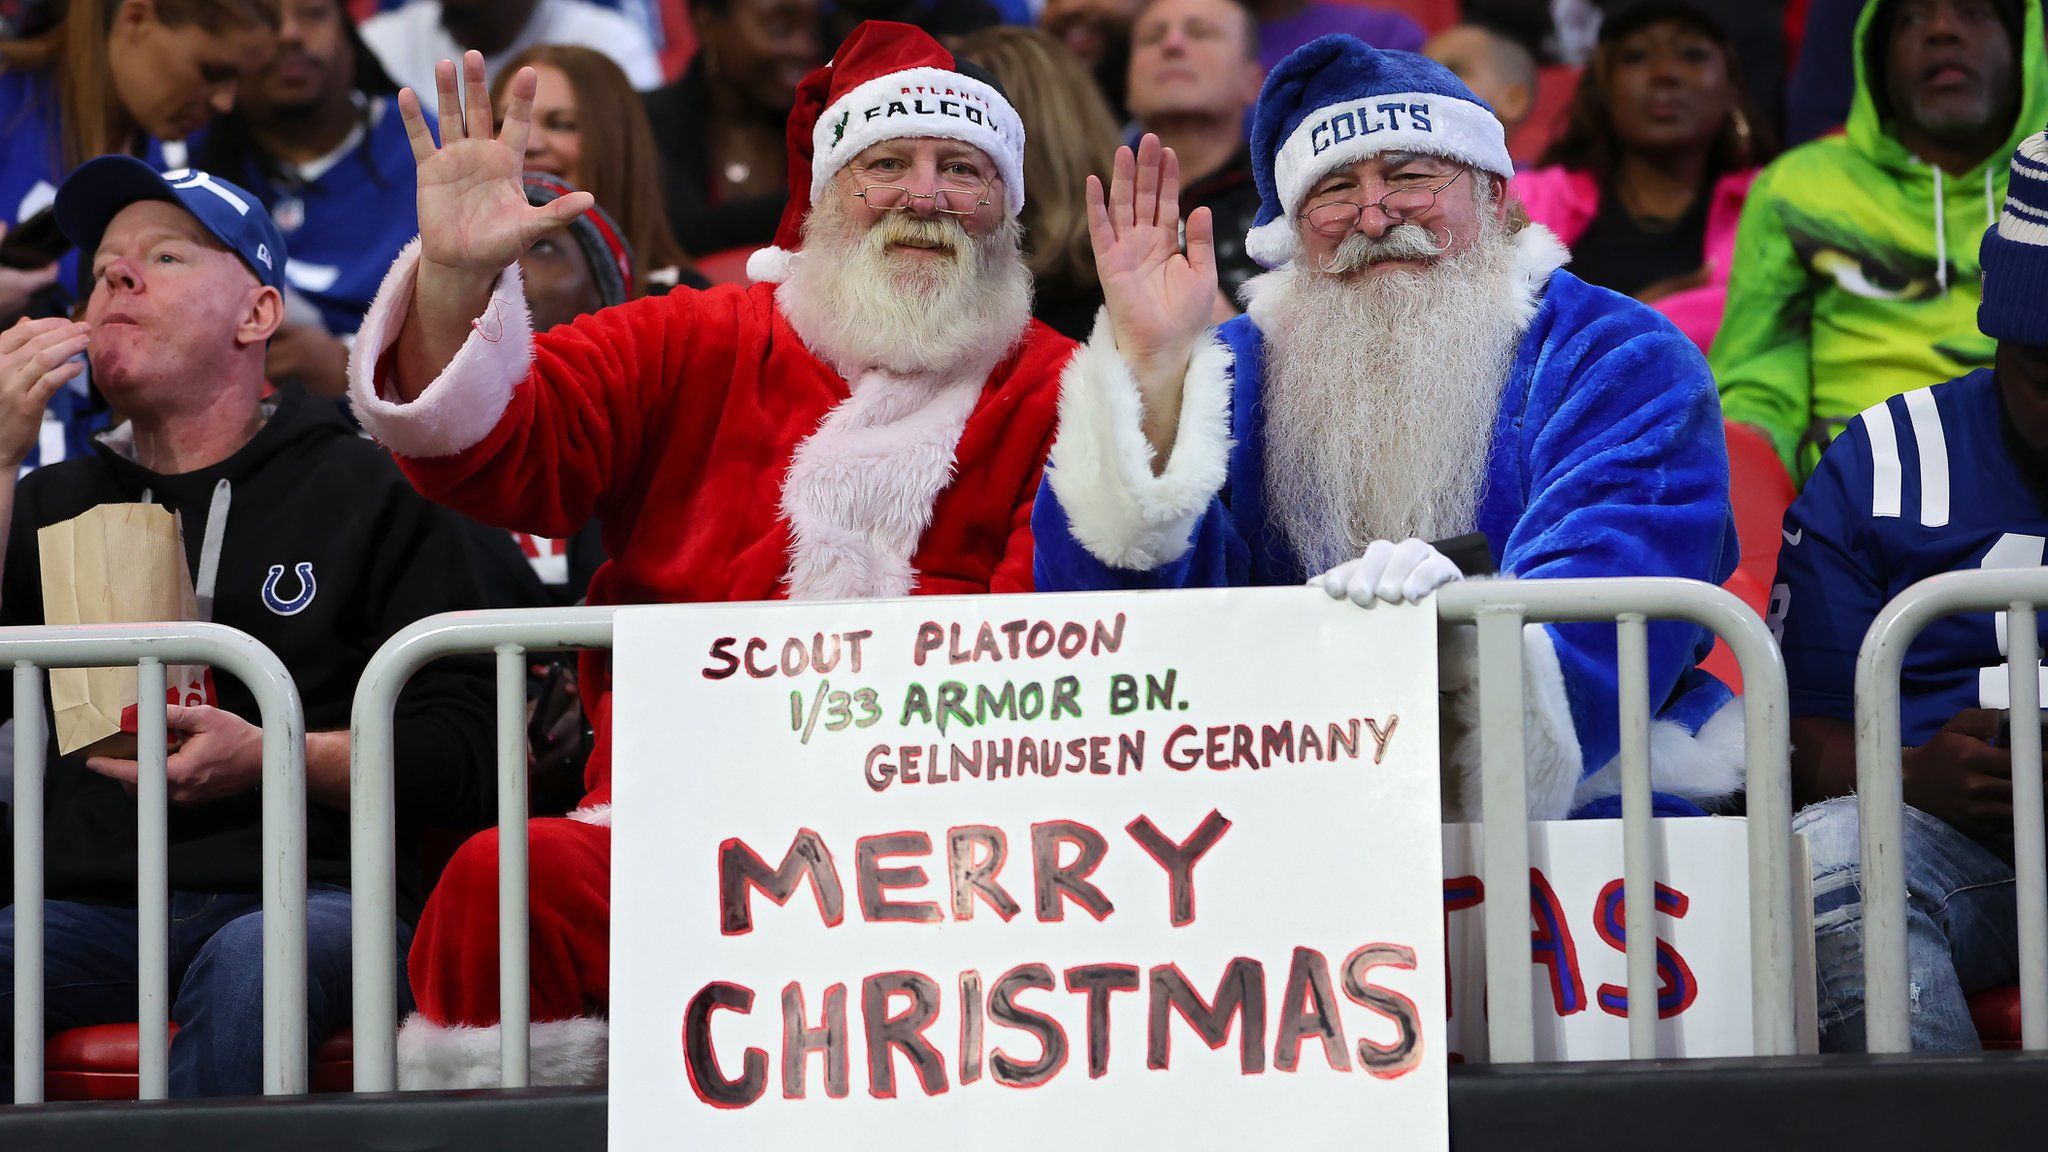 Fanii Atlanta Falcons și Indianapolis Colts ridică un semn de Crăciun Fericit înainte de meciul de pe stadionul Mercedes-Benz